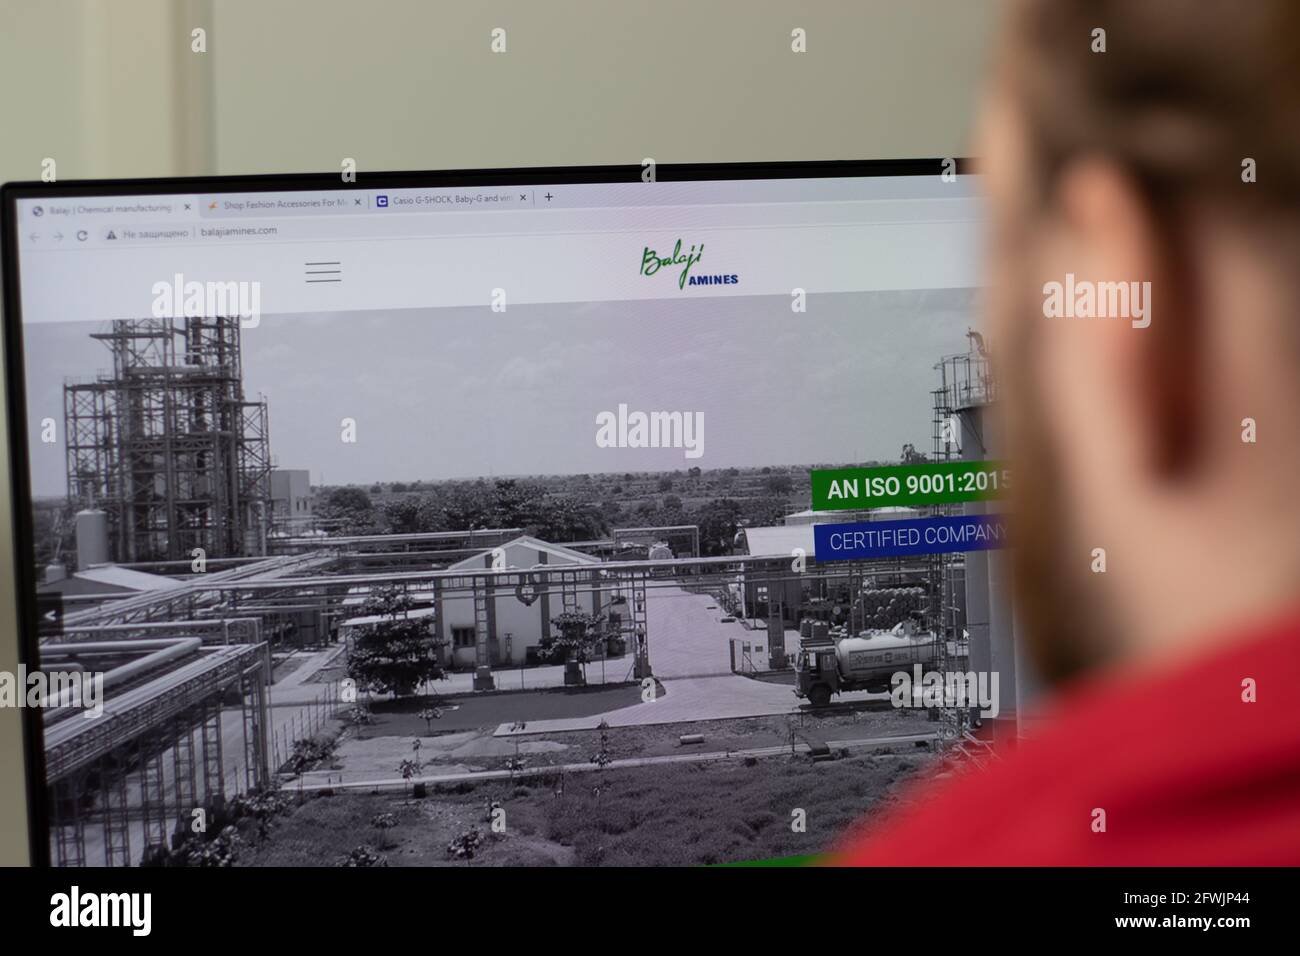 New York, USA - 1 maggio 2021: Sito web della società Balaji ammine con logo sullo schermo, Editoriale illustrativo Foto Stock